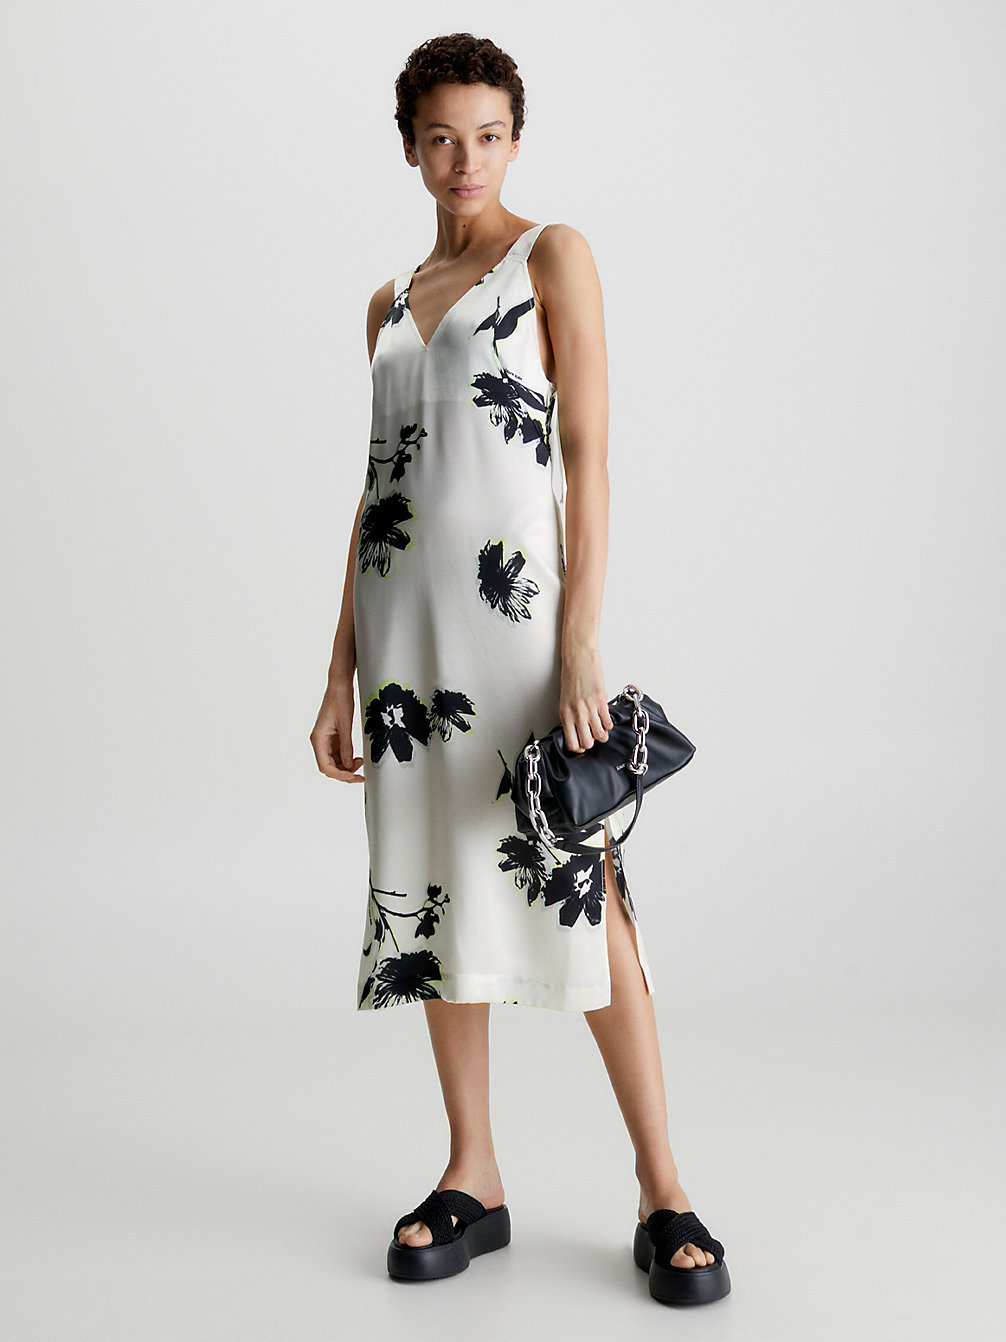 MODERN FLORAL / VANILLA ICE Floral Slip Dress undefined women Calvin Klein